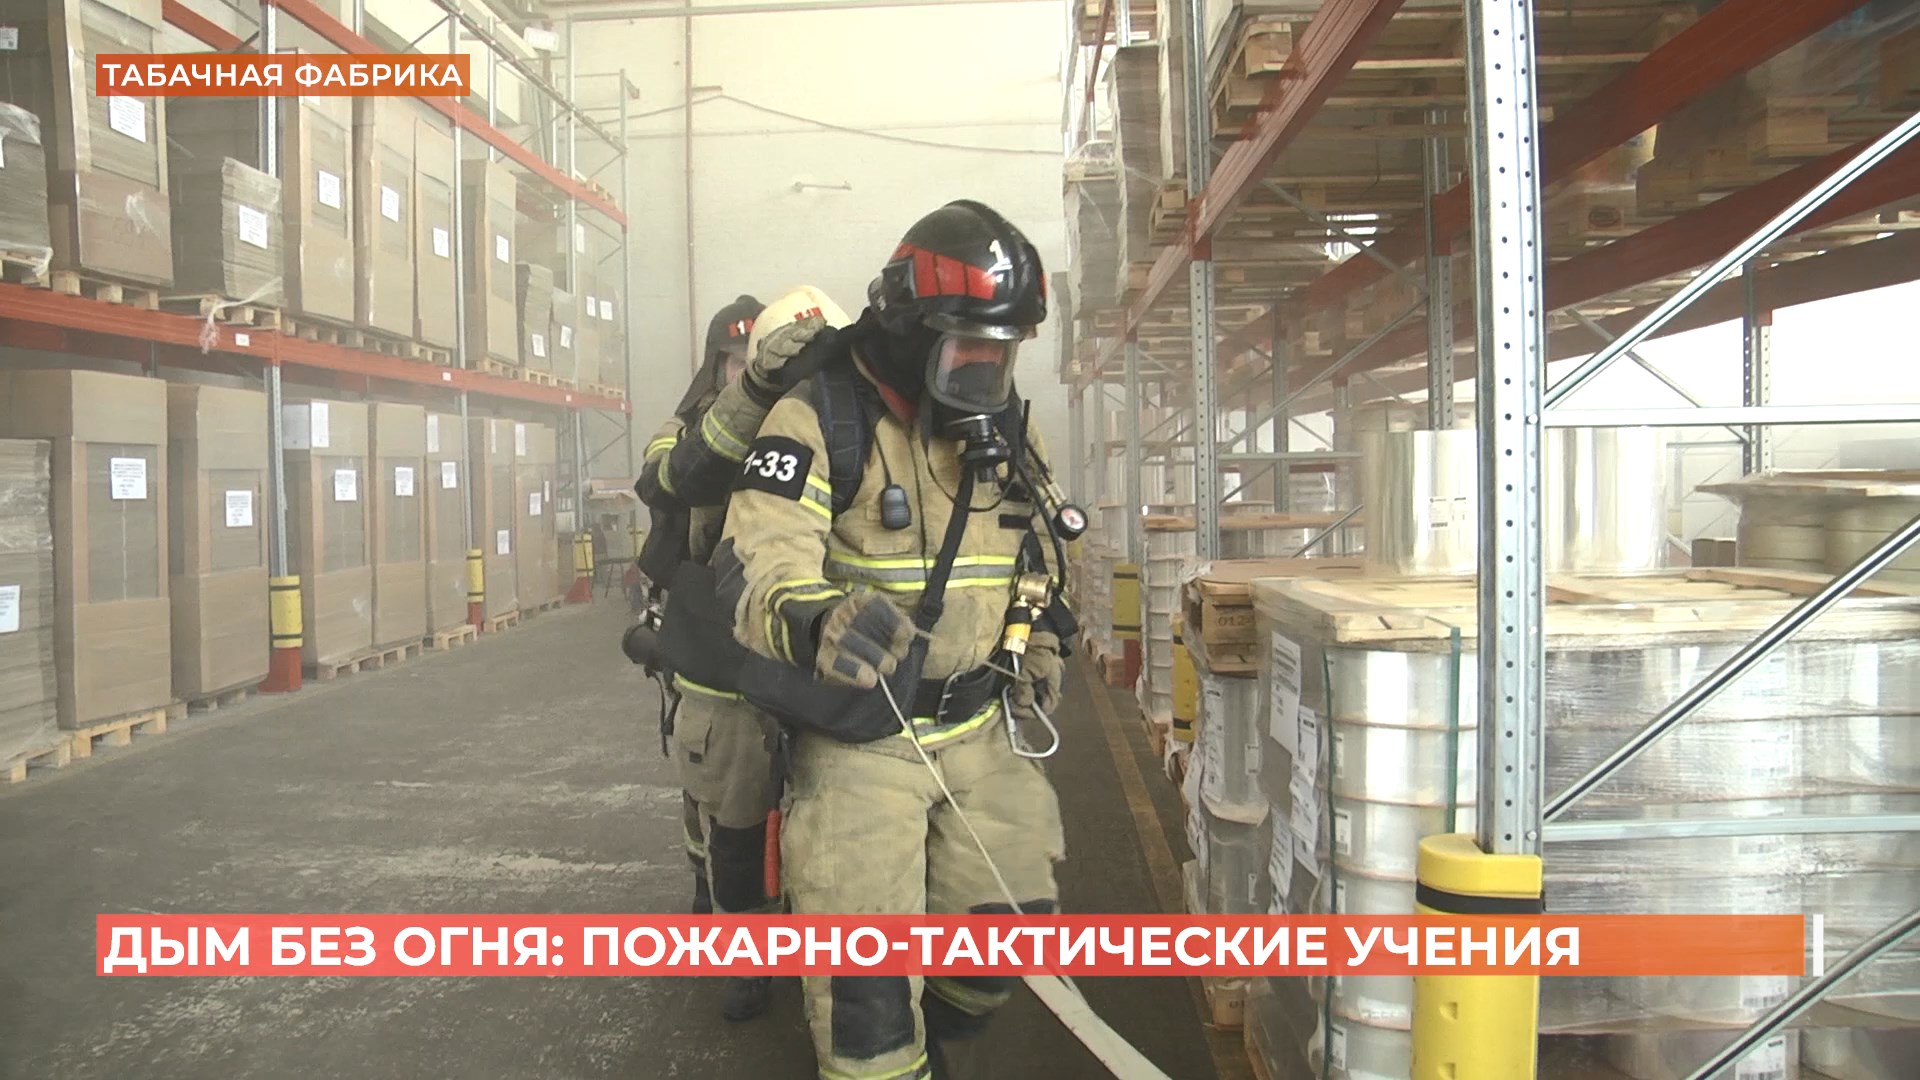 Дым без огня: в Ростове спасатели провели пожарно-тактические учения